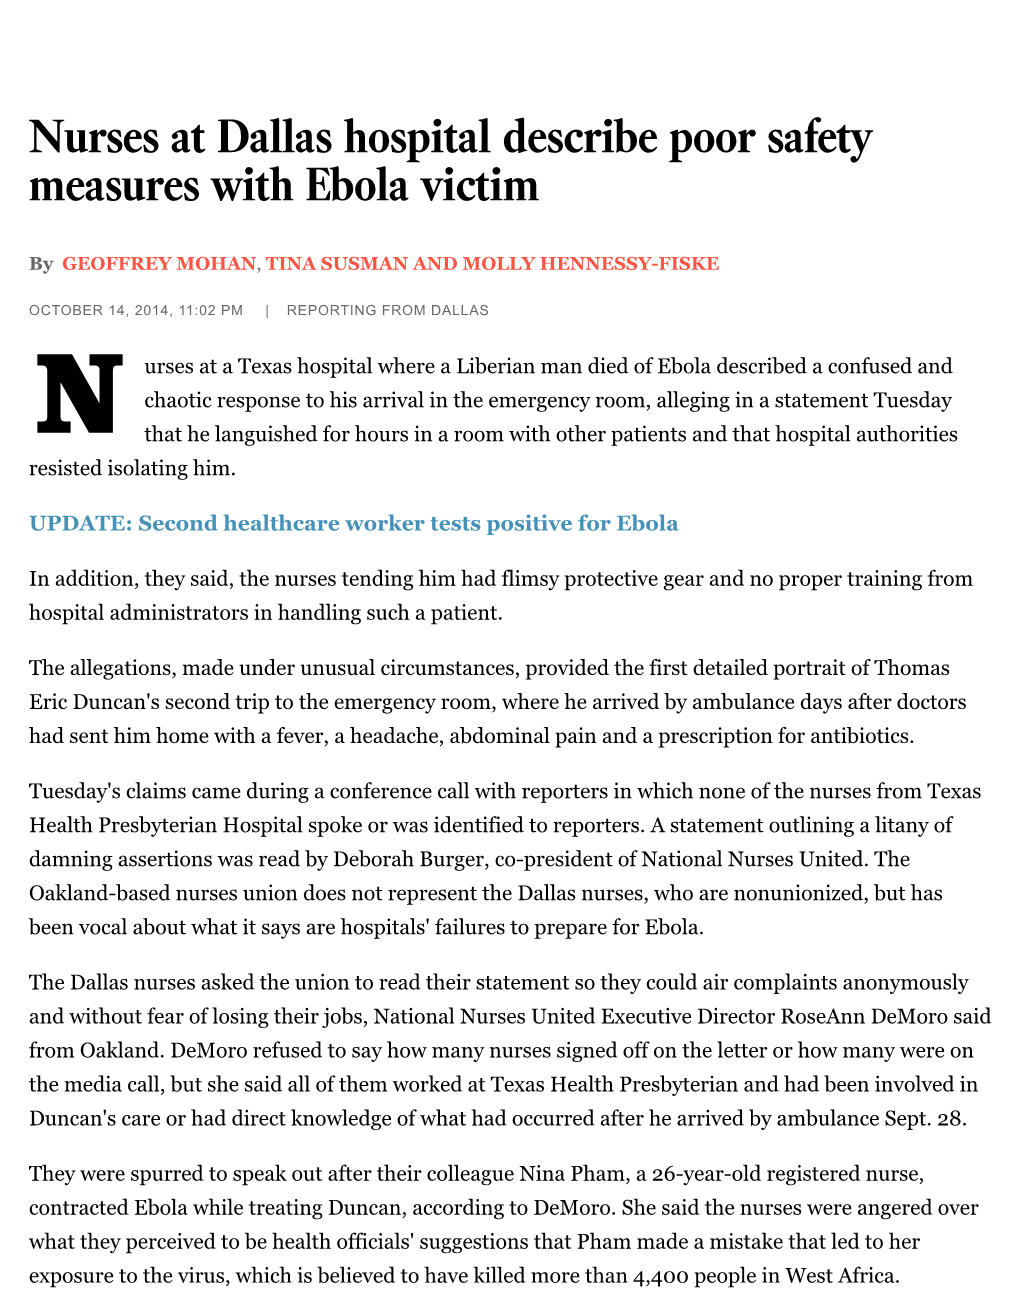 Nurses at Dallas Hospital Describe Poor Safety Measures with Ebola Victim